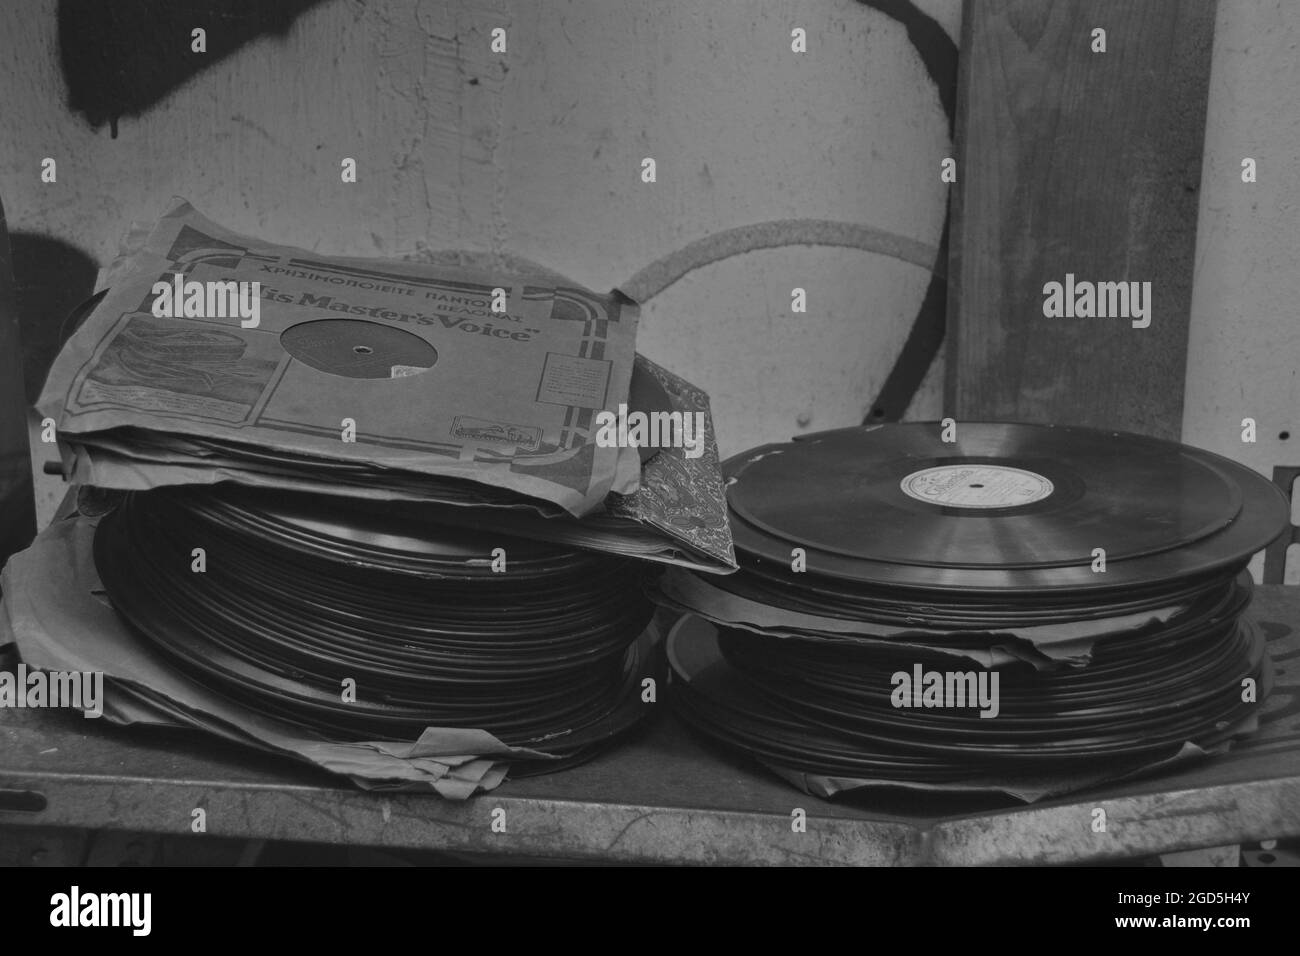 Atenas, Grecia - 21 de mayo de 2015: Discos fonográficos gramófonos vintage de 78 rpm. Música antigua en blanco y negro. Foto de stock